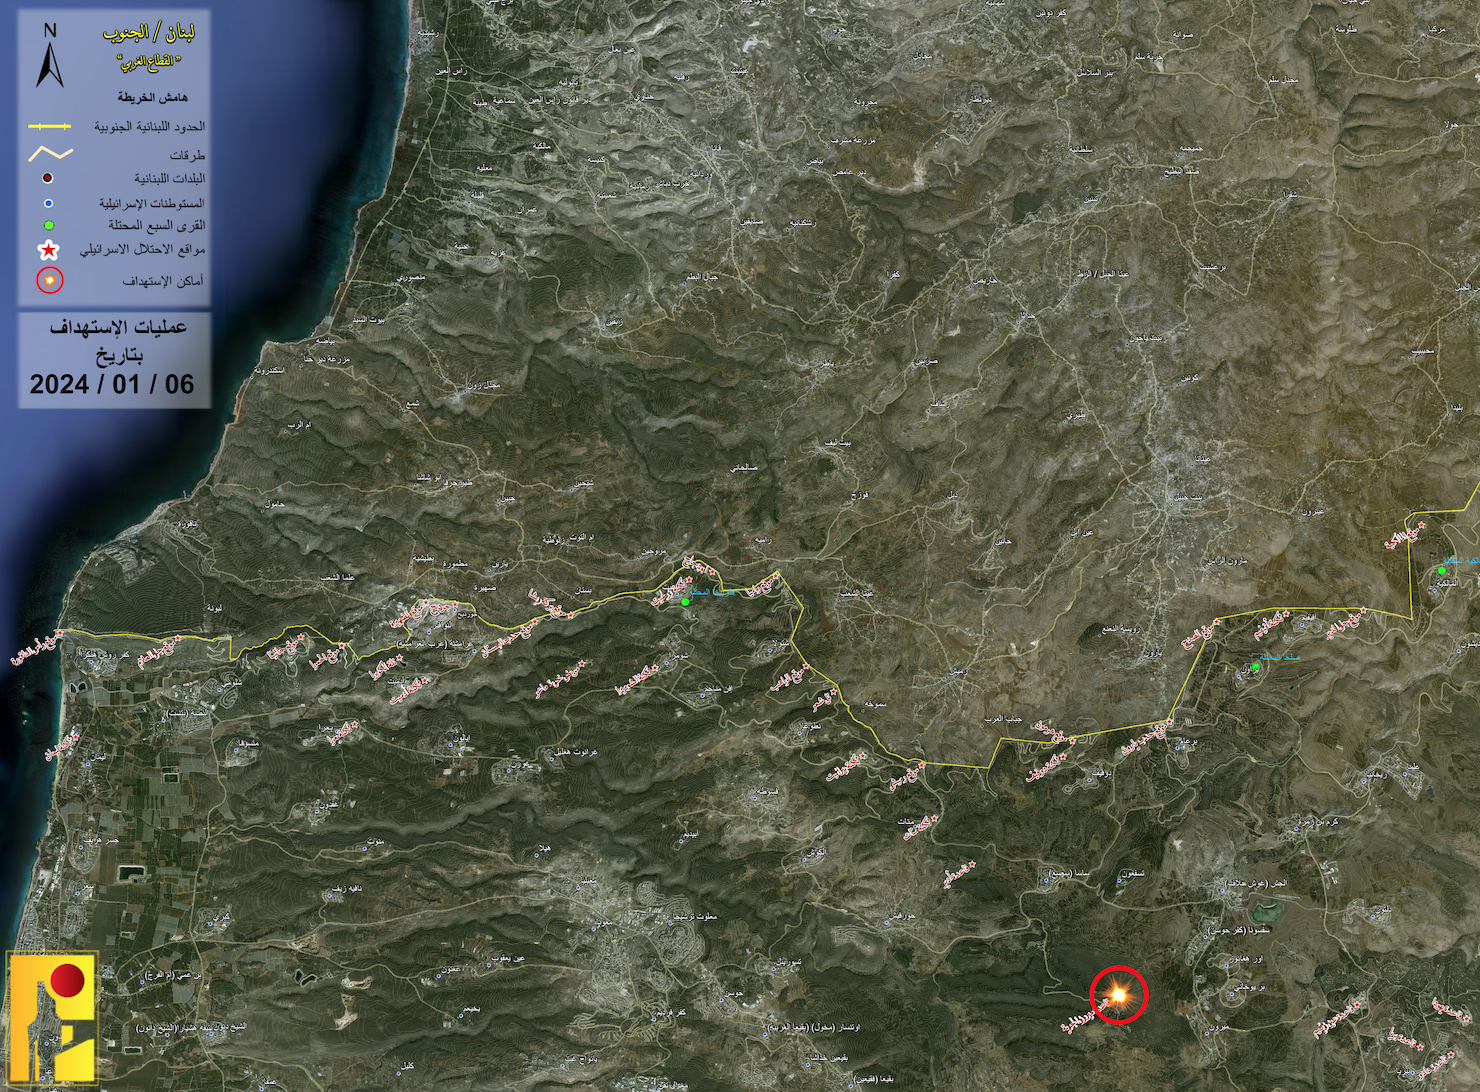 خريطة نشرها حزب الله تبيّن موقع قاعدة ميرون في جبل الجرمق، والتي جرى استهدافها صباح اليوم 